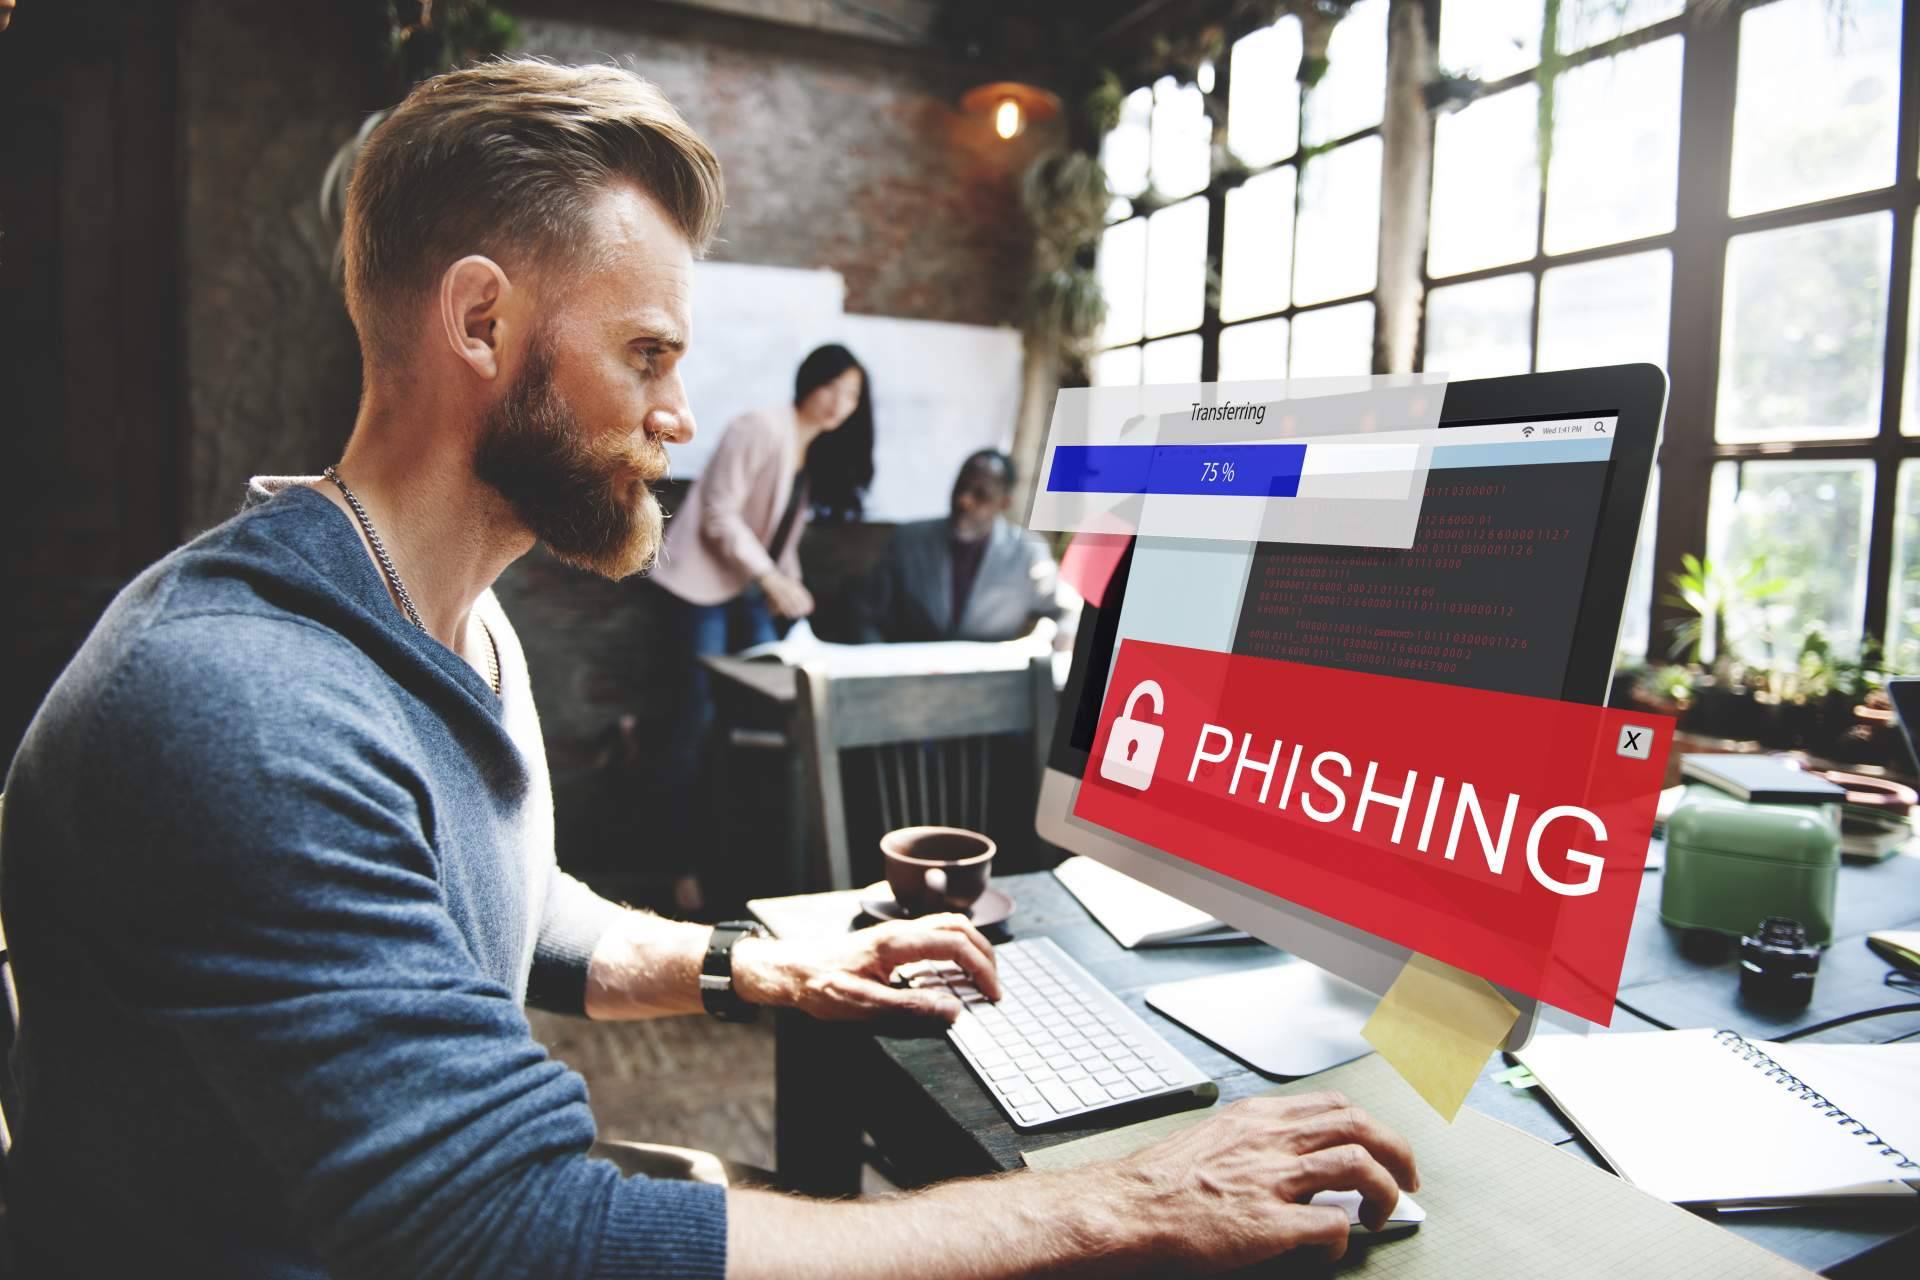 Recuperar el dinero tras ser estafado por phishing, de la mano de abusosfinancieros.com